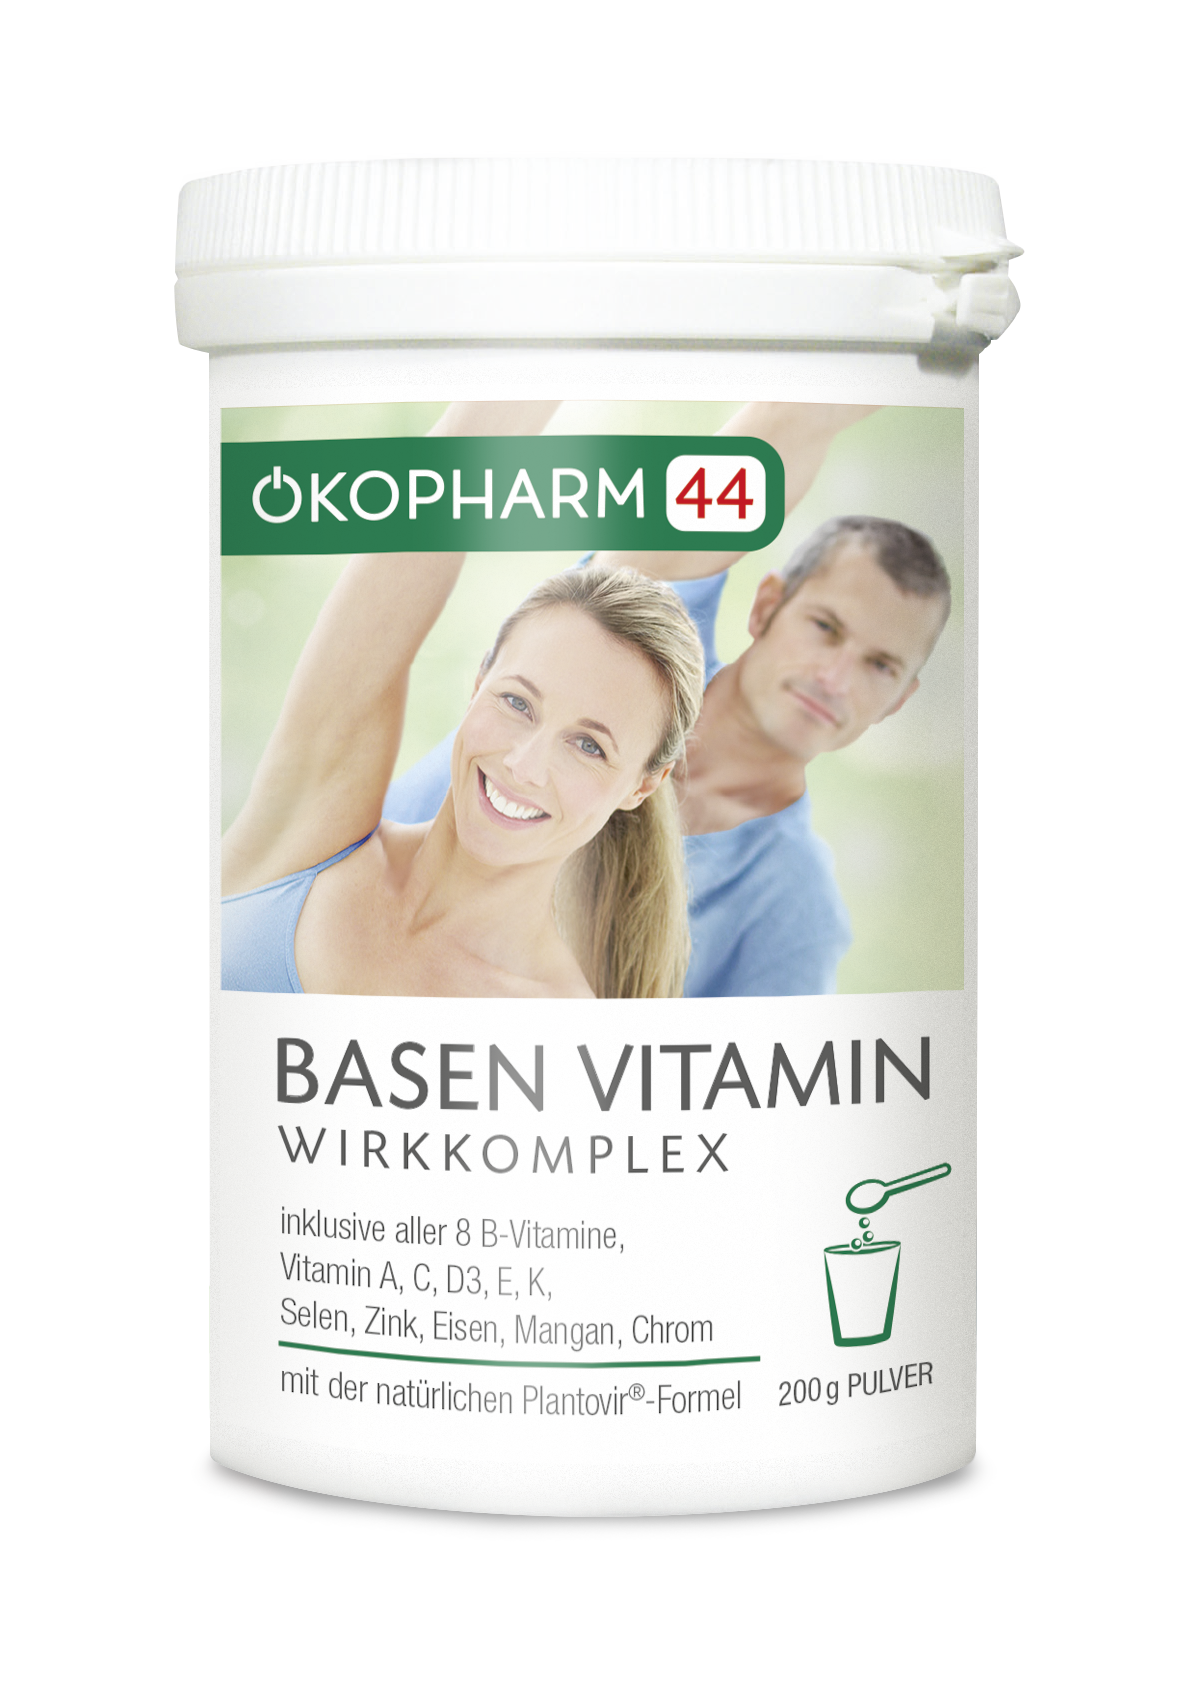 Basen Vitamin Wirkkomplex